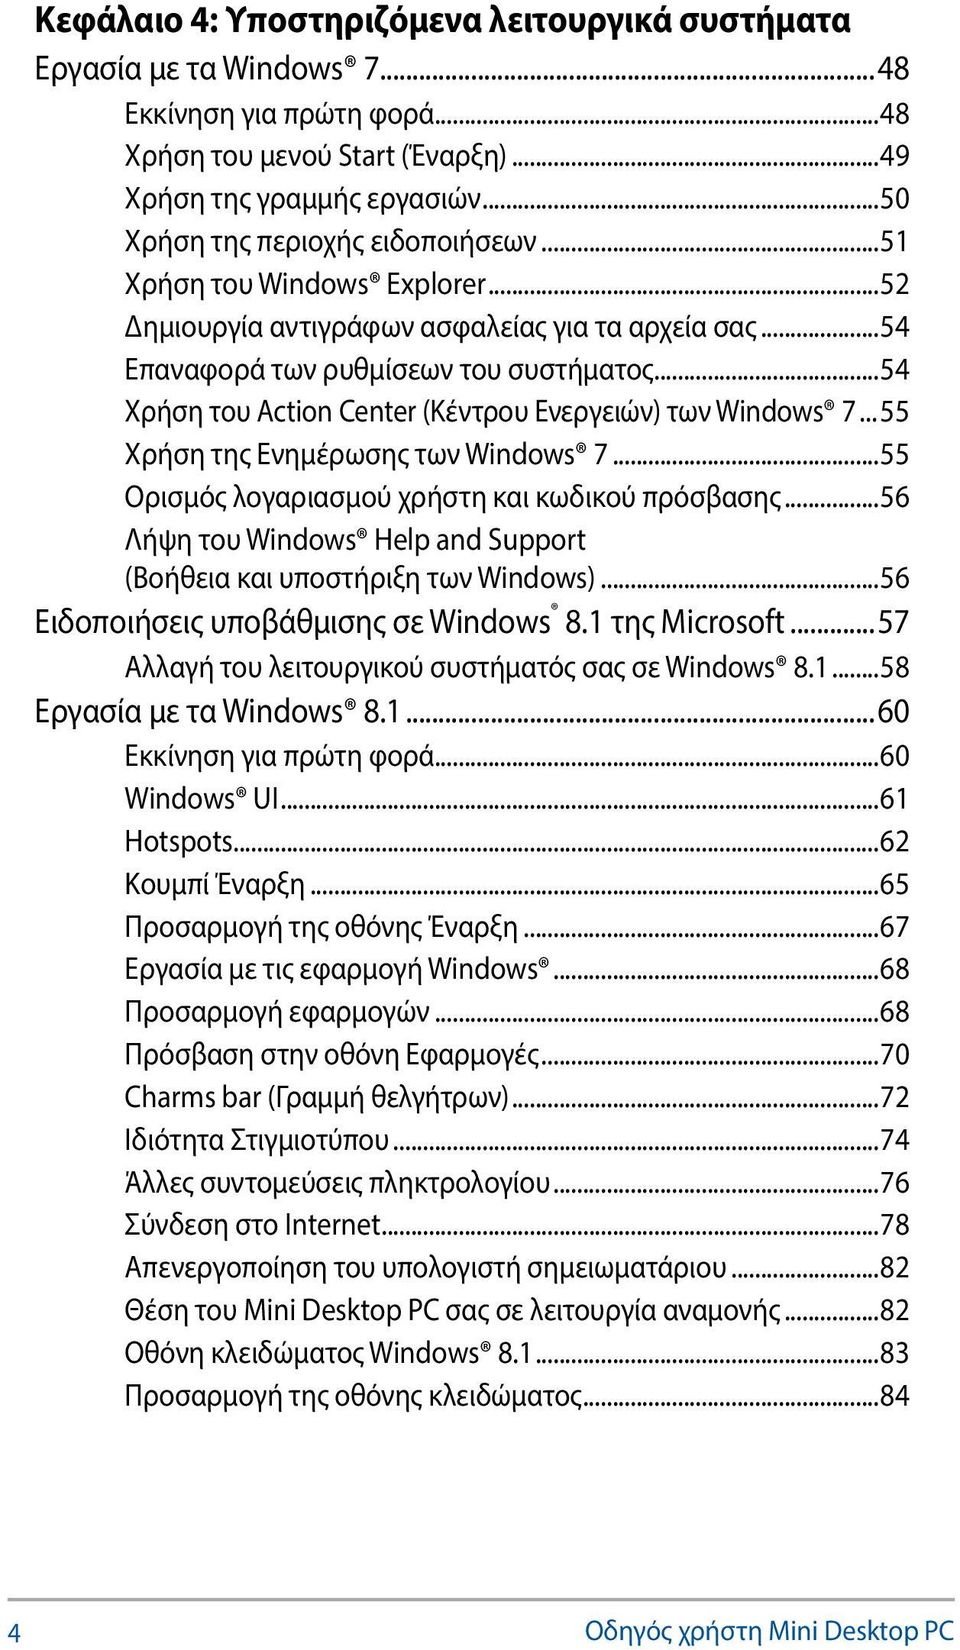 ..54 Χρήση του Action Center (Κέντρου Ενεργειών) των Windows 7... 55 Χρήση της Ενημέρωσης των Windows 7...55 Ορισμός λογαριασμού χρήστη και κωδικού πρόσβασης.